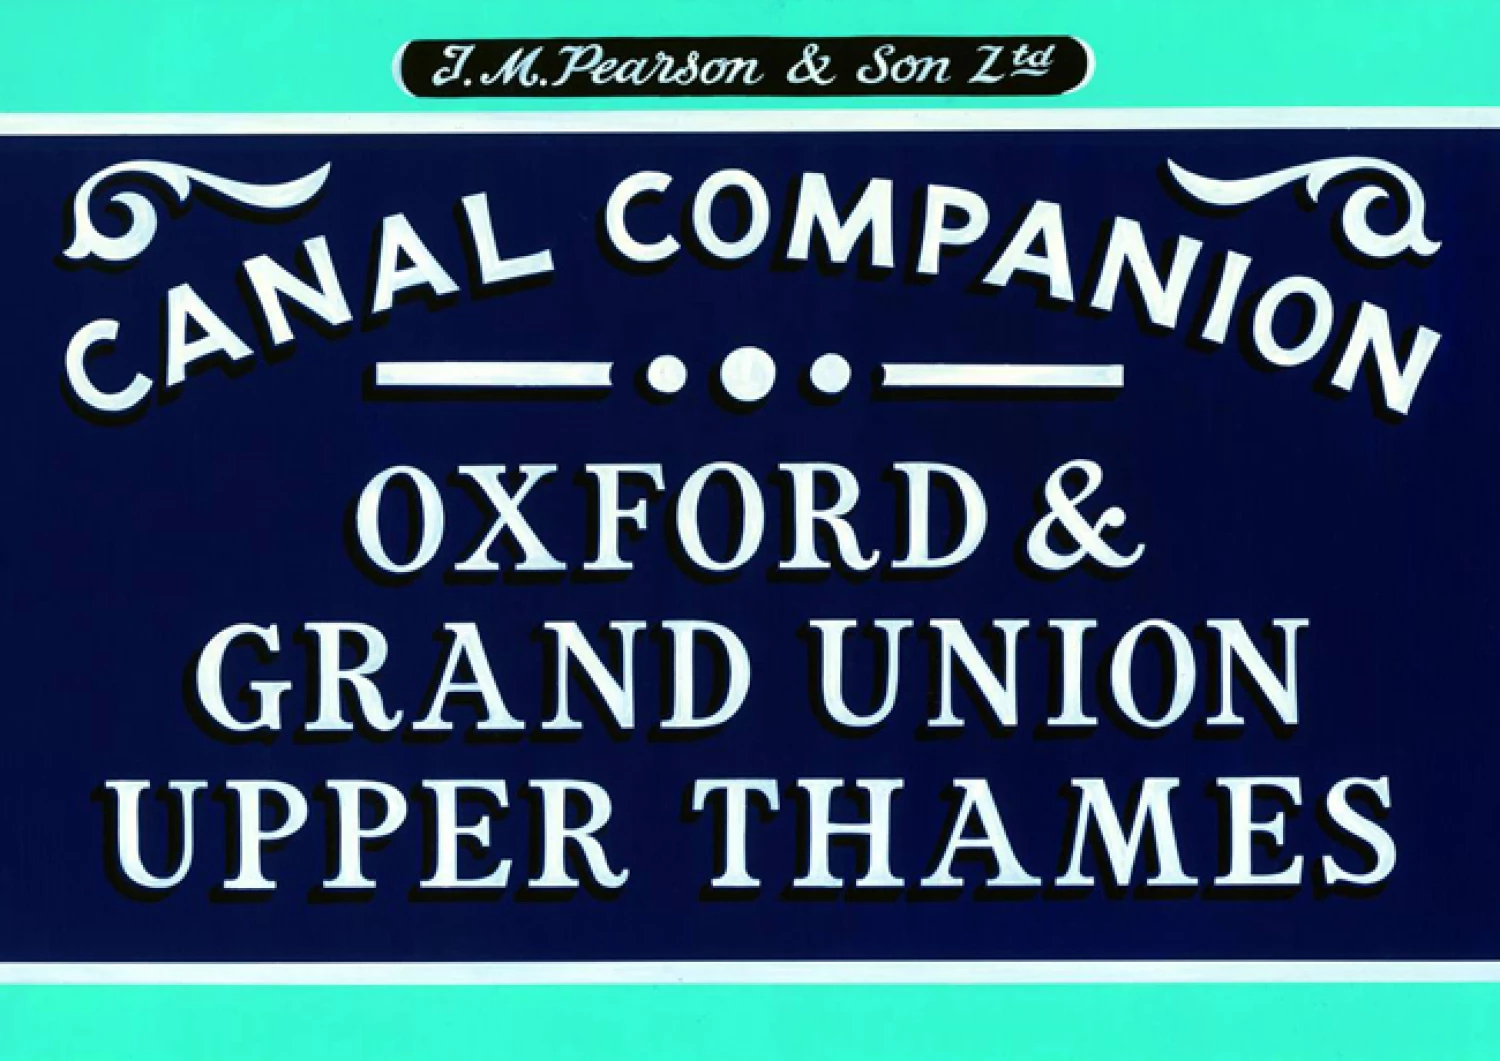 pearsons oxford  grand union